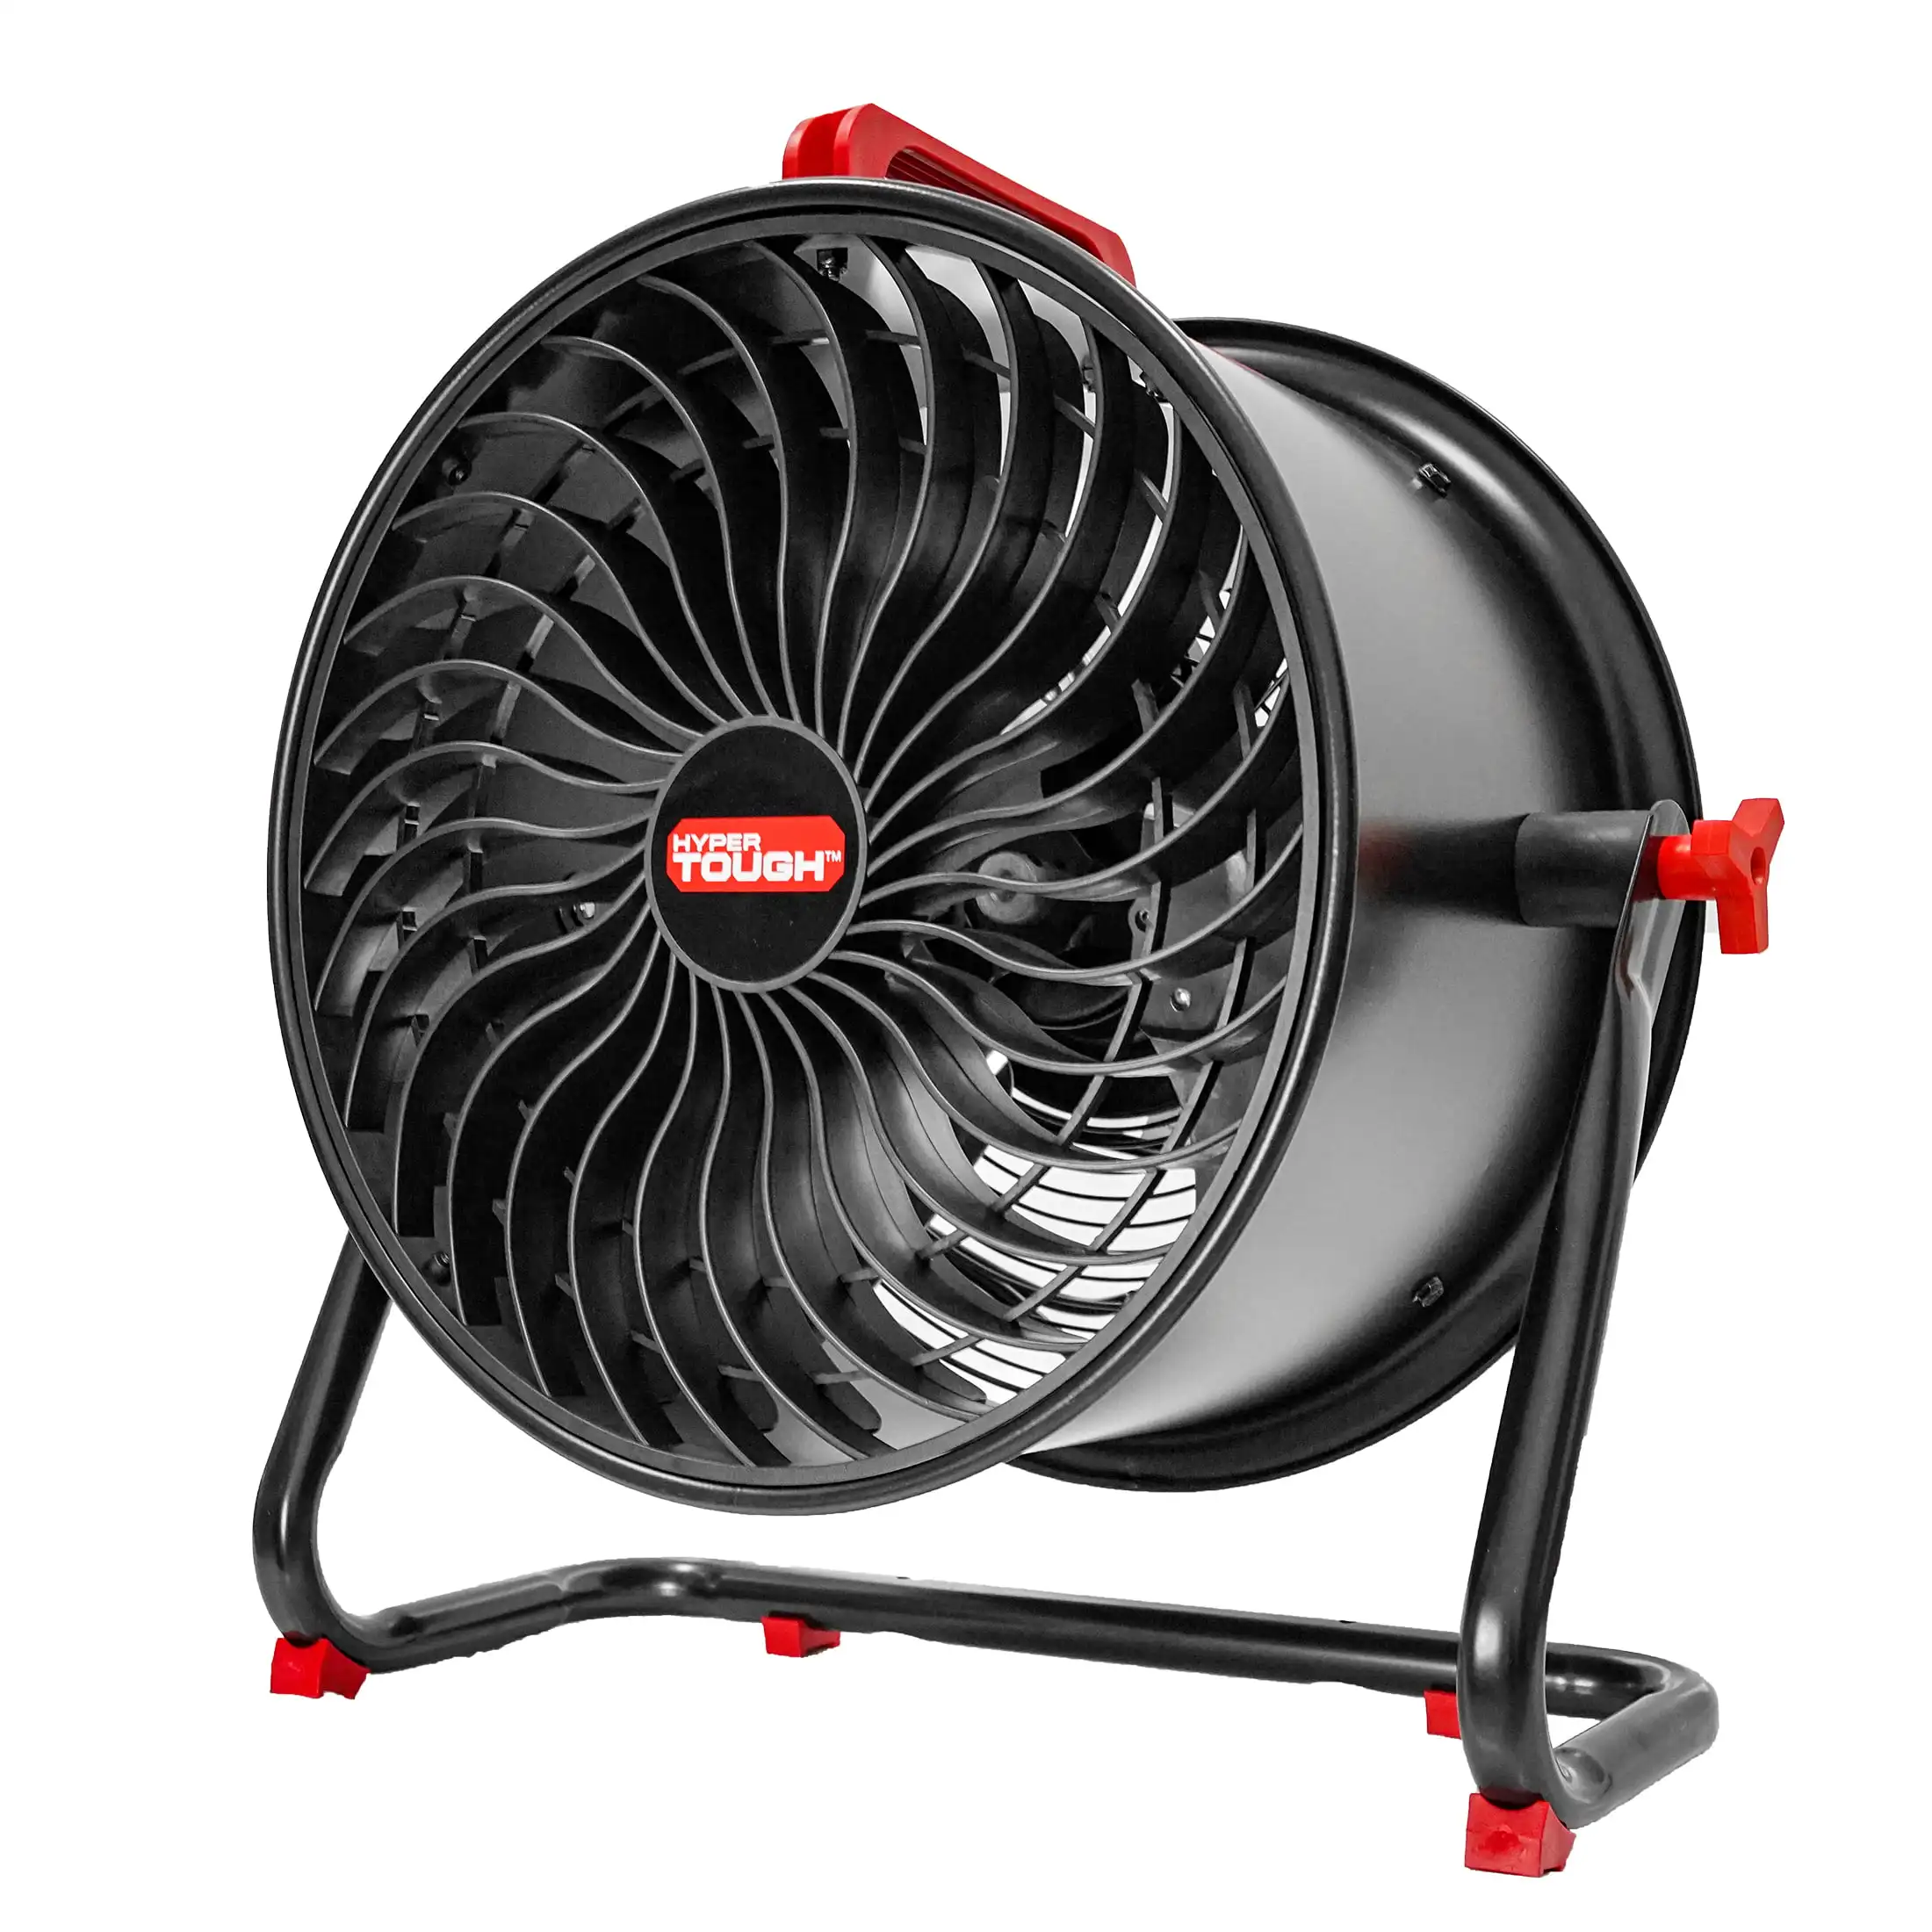 

Hyper Tough Black & Red 16 inch 2-Speed Turbo Drum Fan